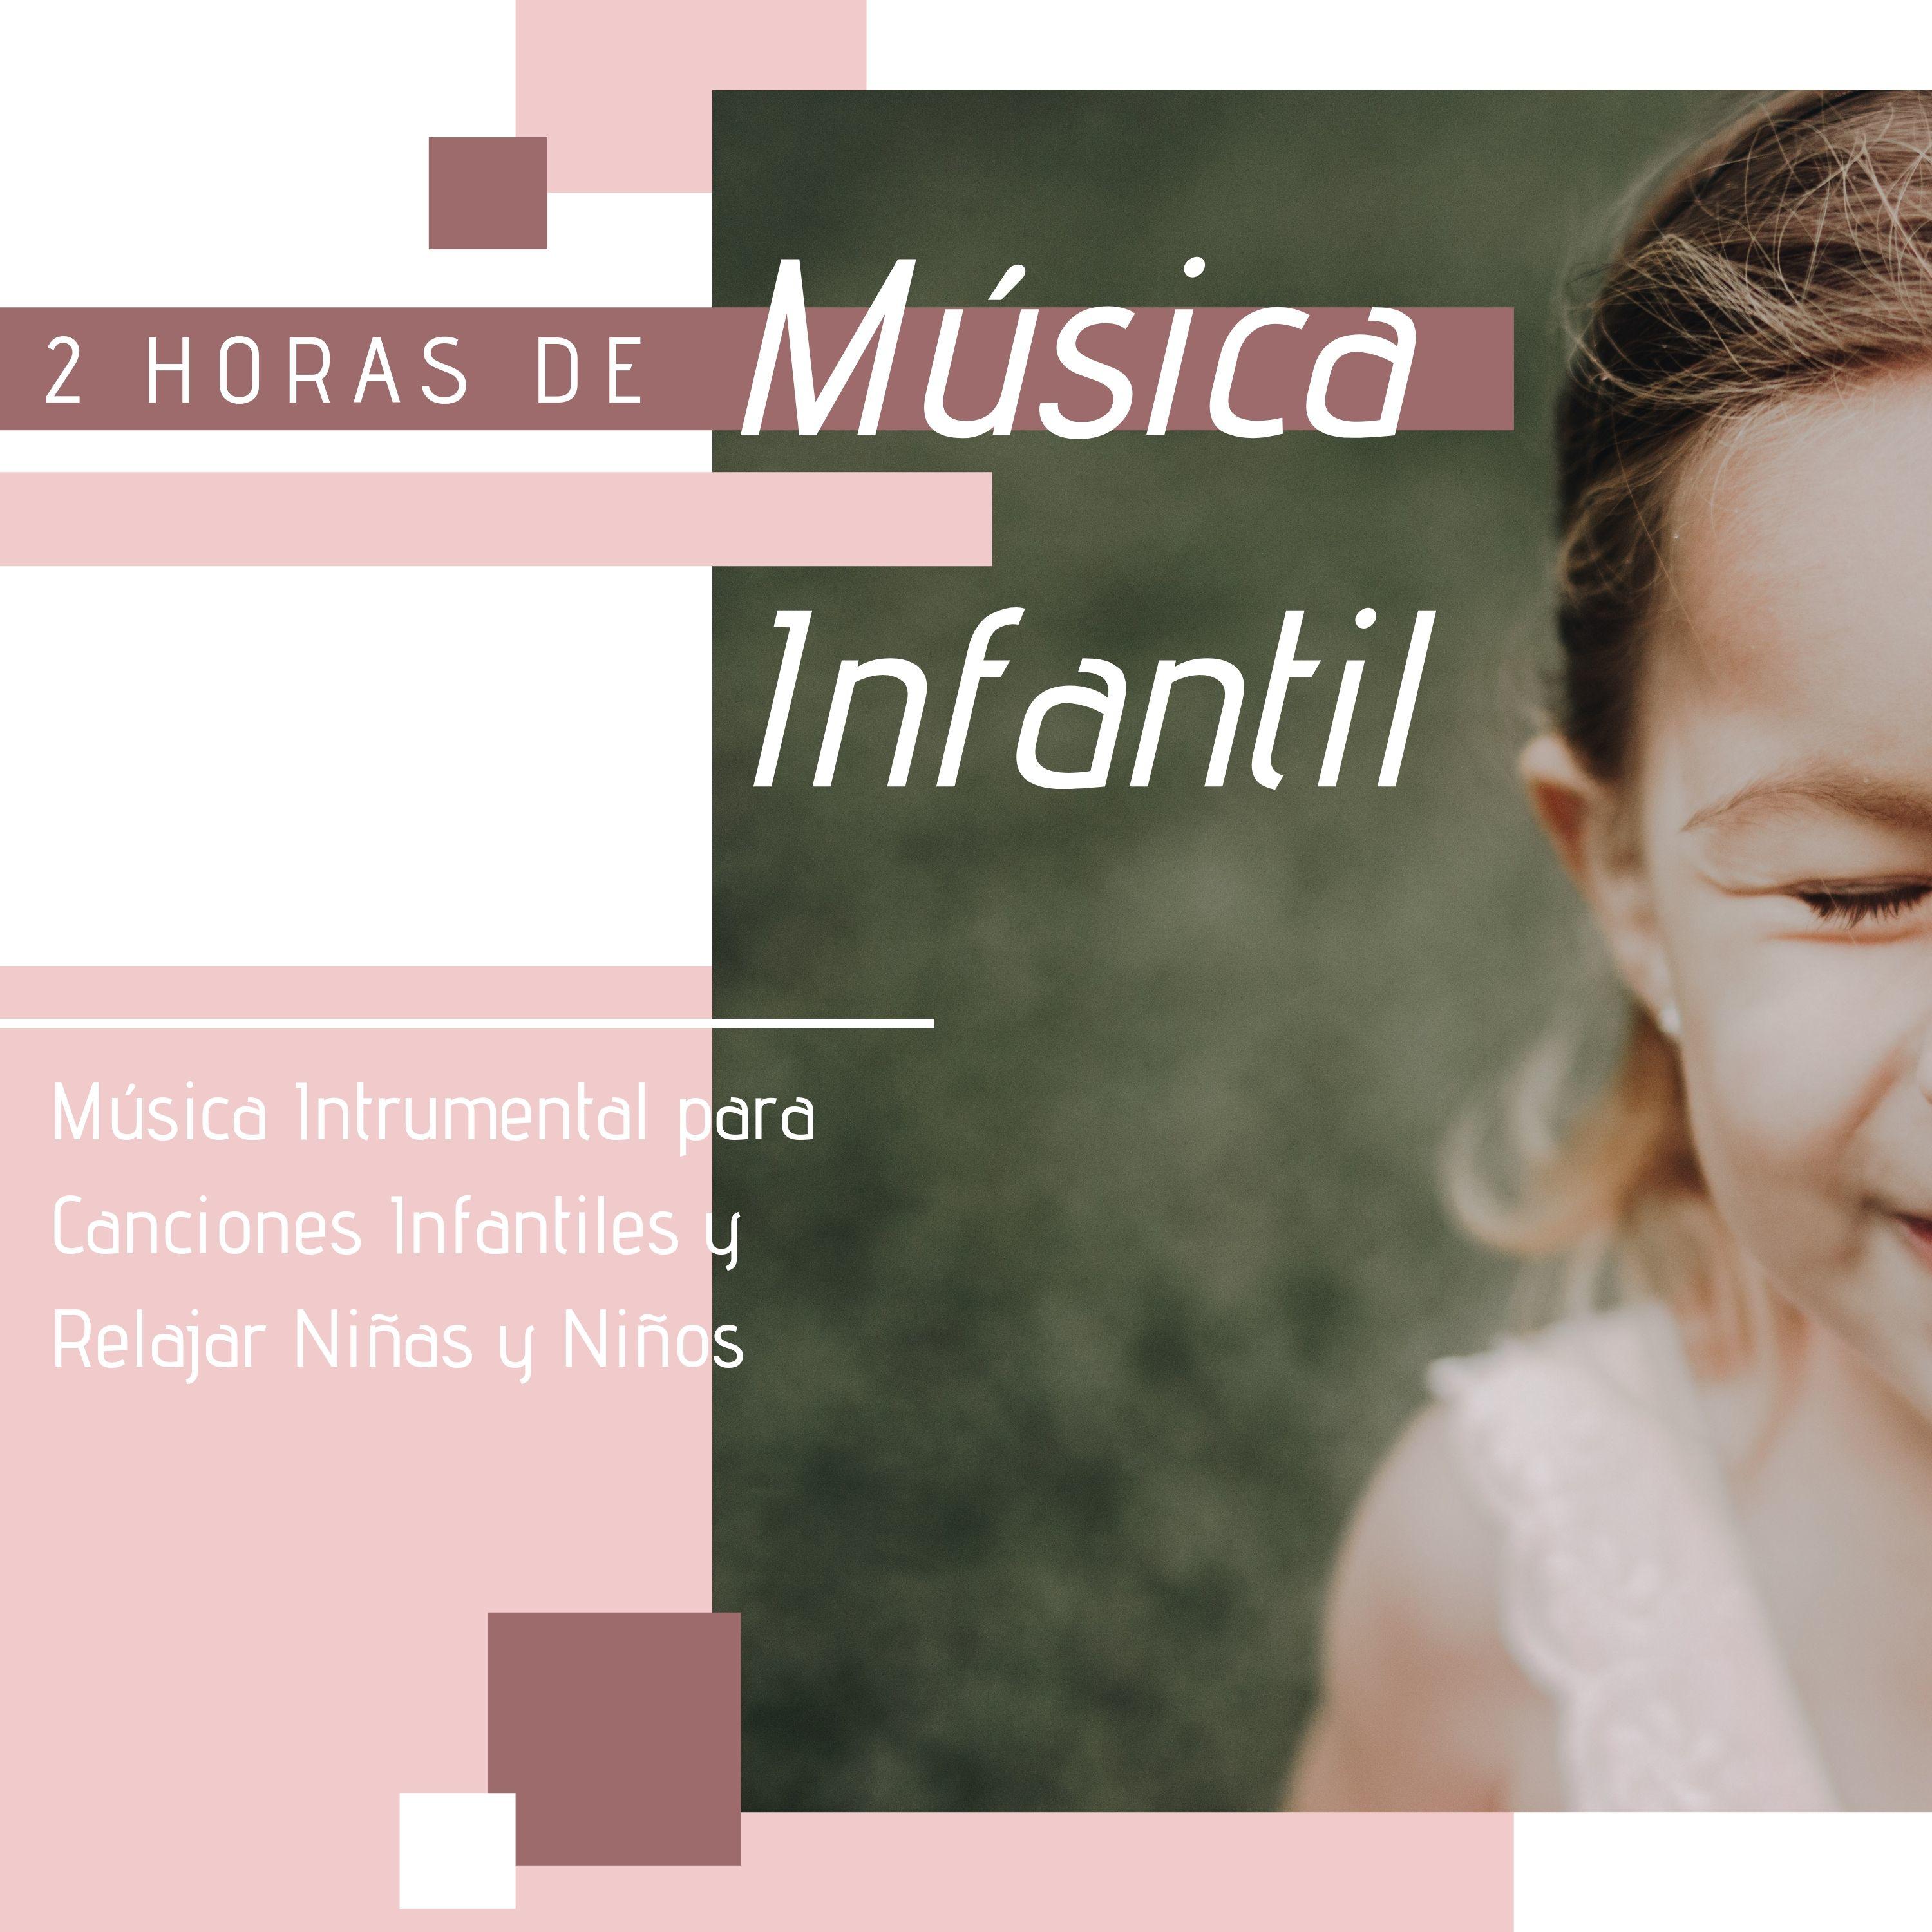 2 Horas de Música Infantil - Música Intrumental para Canciones Infantiles y Relajar Niñas y Niños